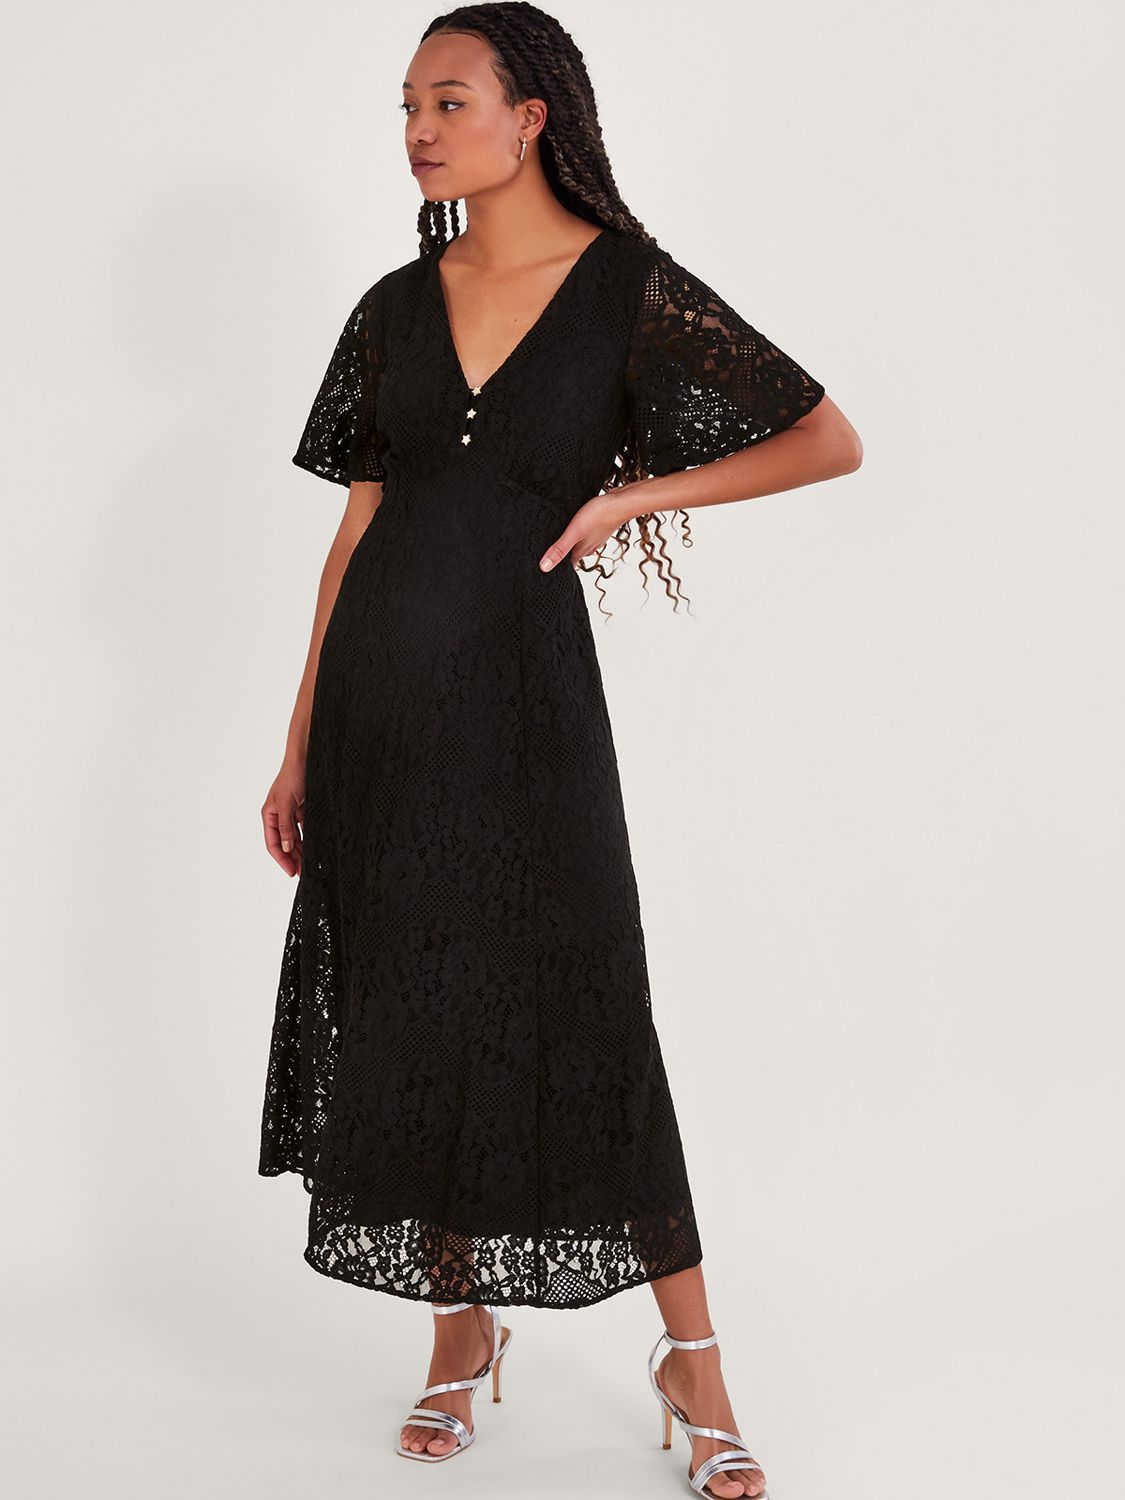 Monsoon Lace Cotton Blend Maxi Tea Dress, Black